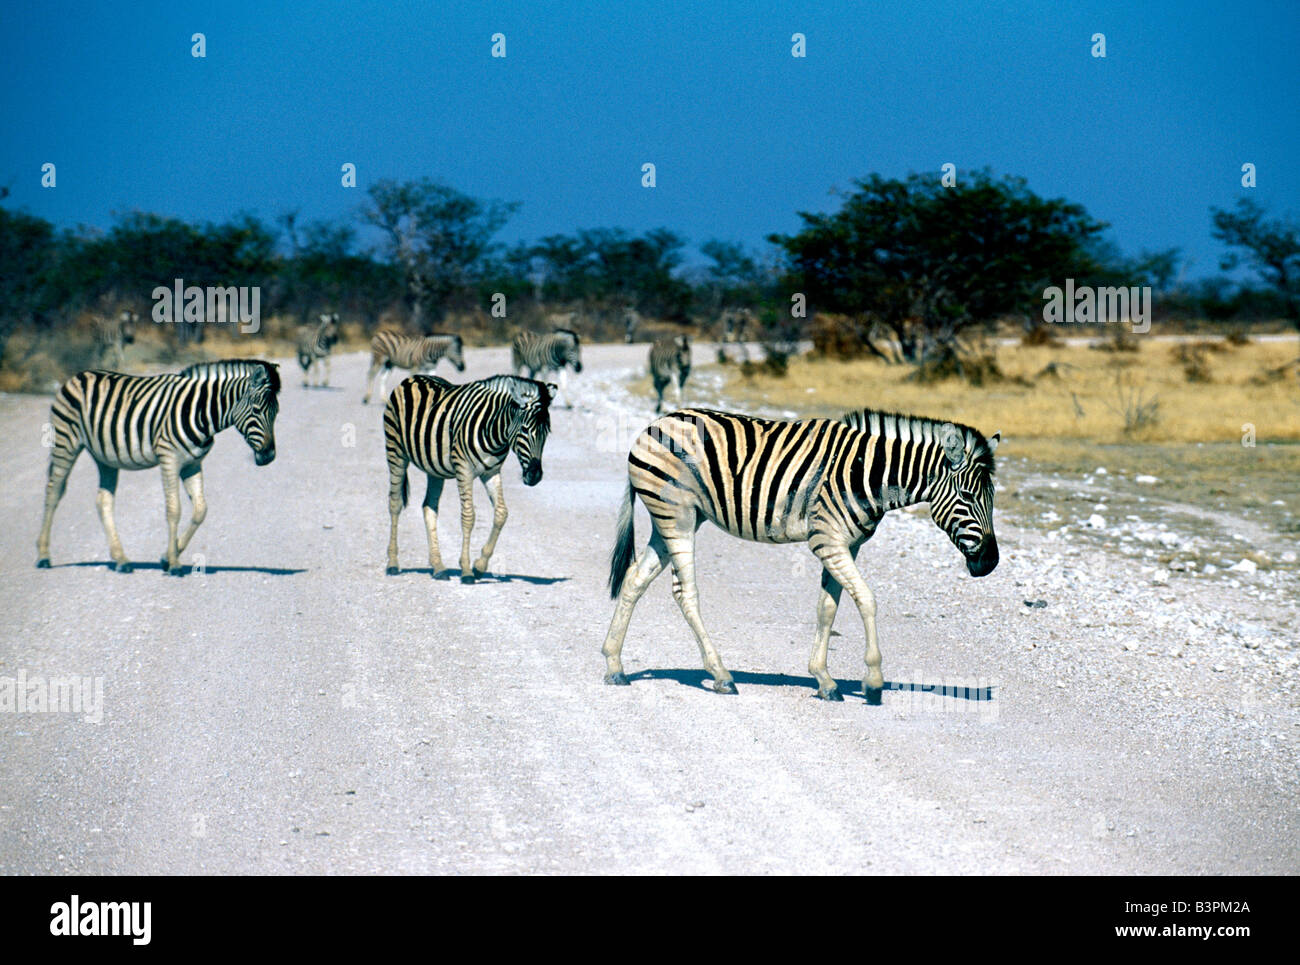 Zebras (Equus zebra), Etosha National Park, Namibia, Africa Stock Photo